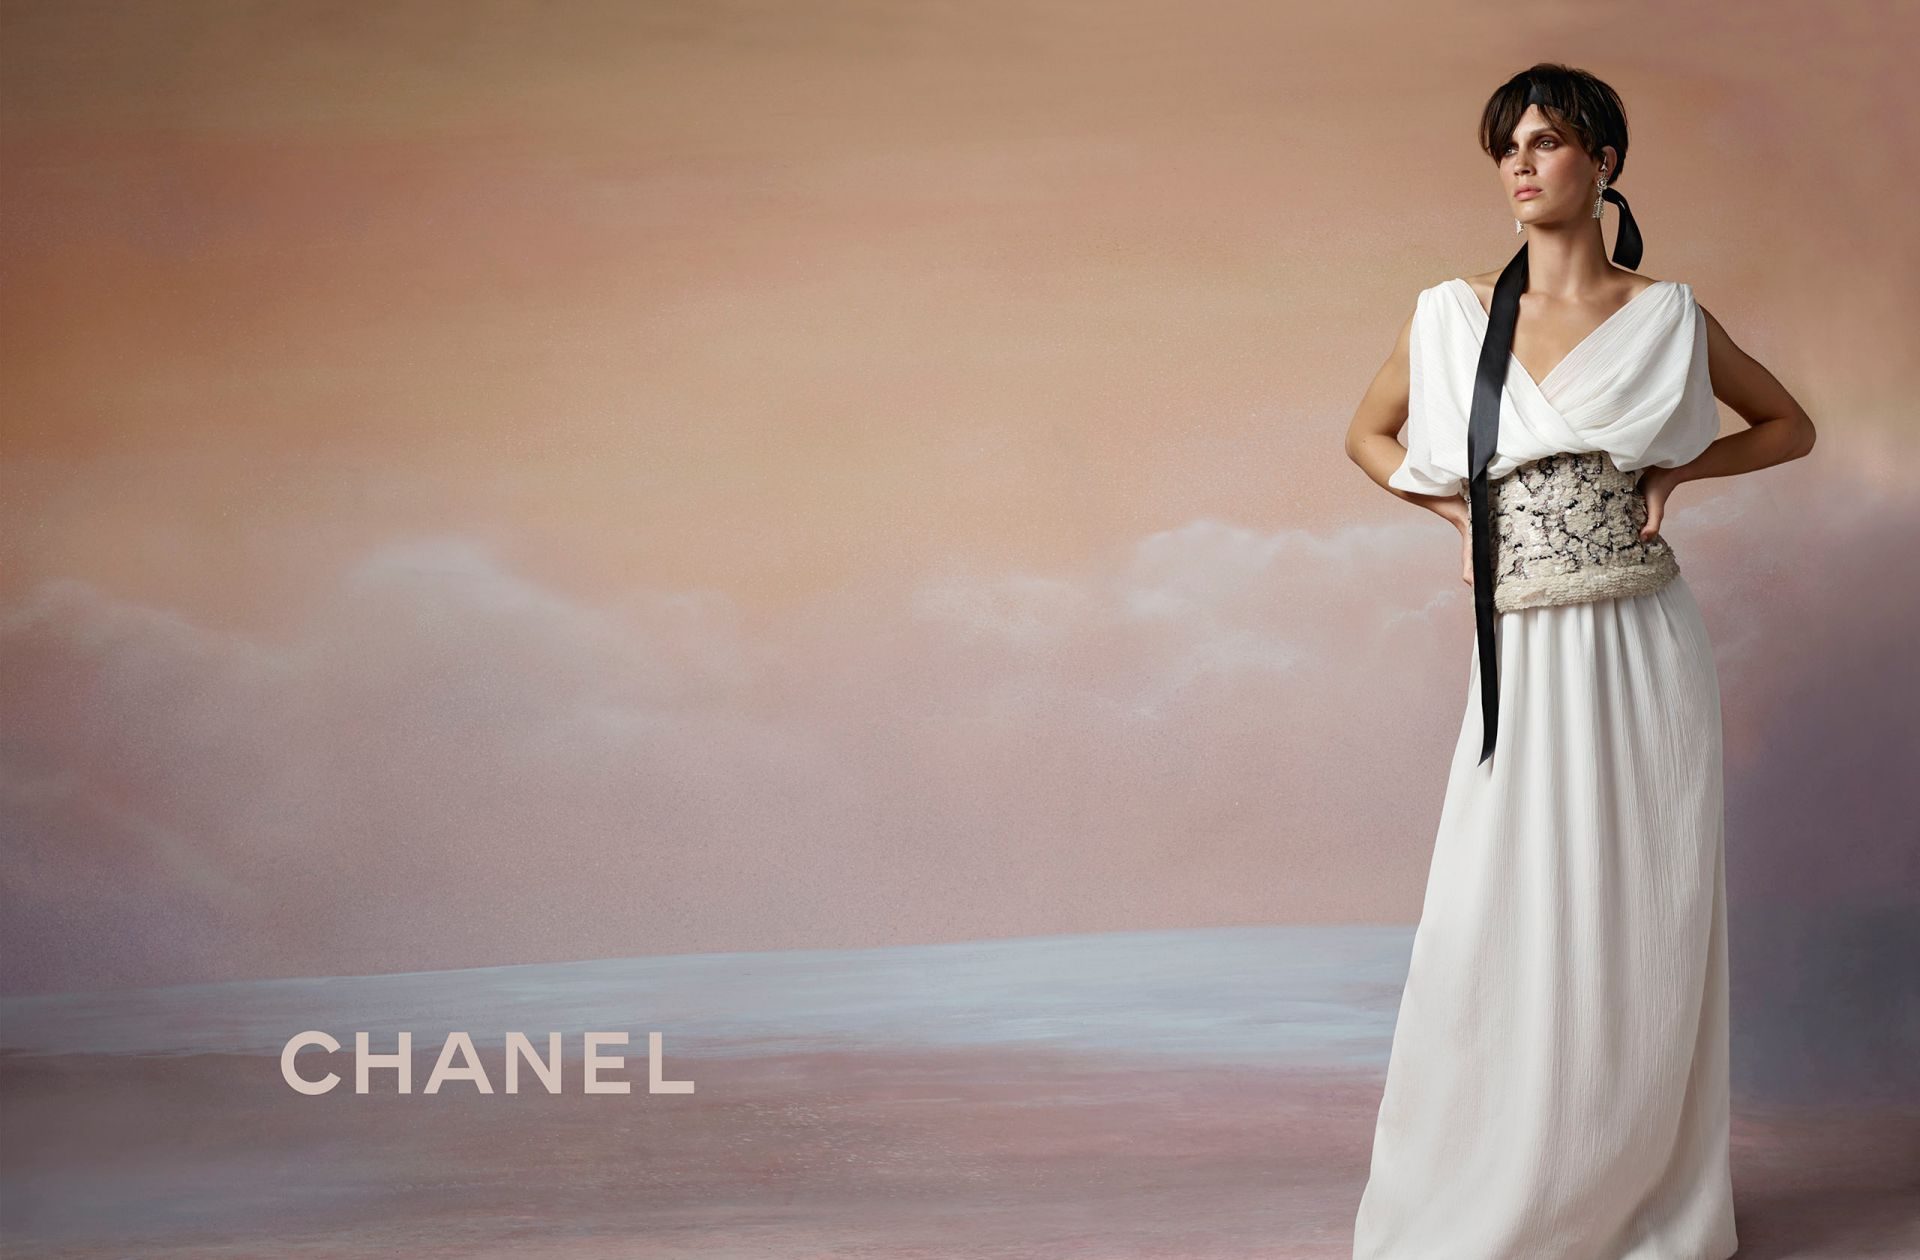 Chanel-resort-2018-ad-campaign-03